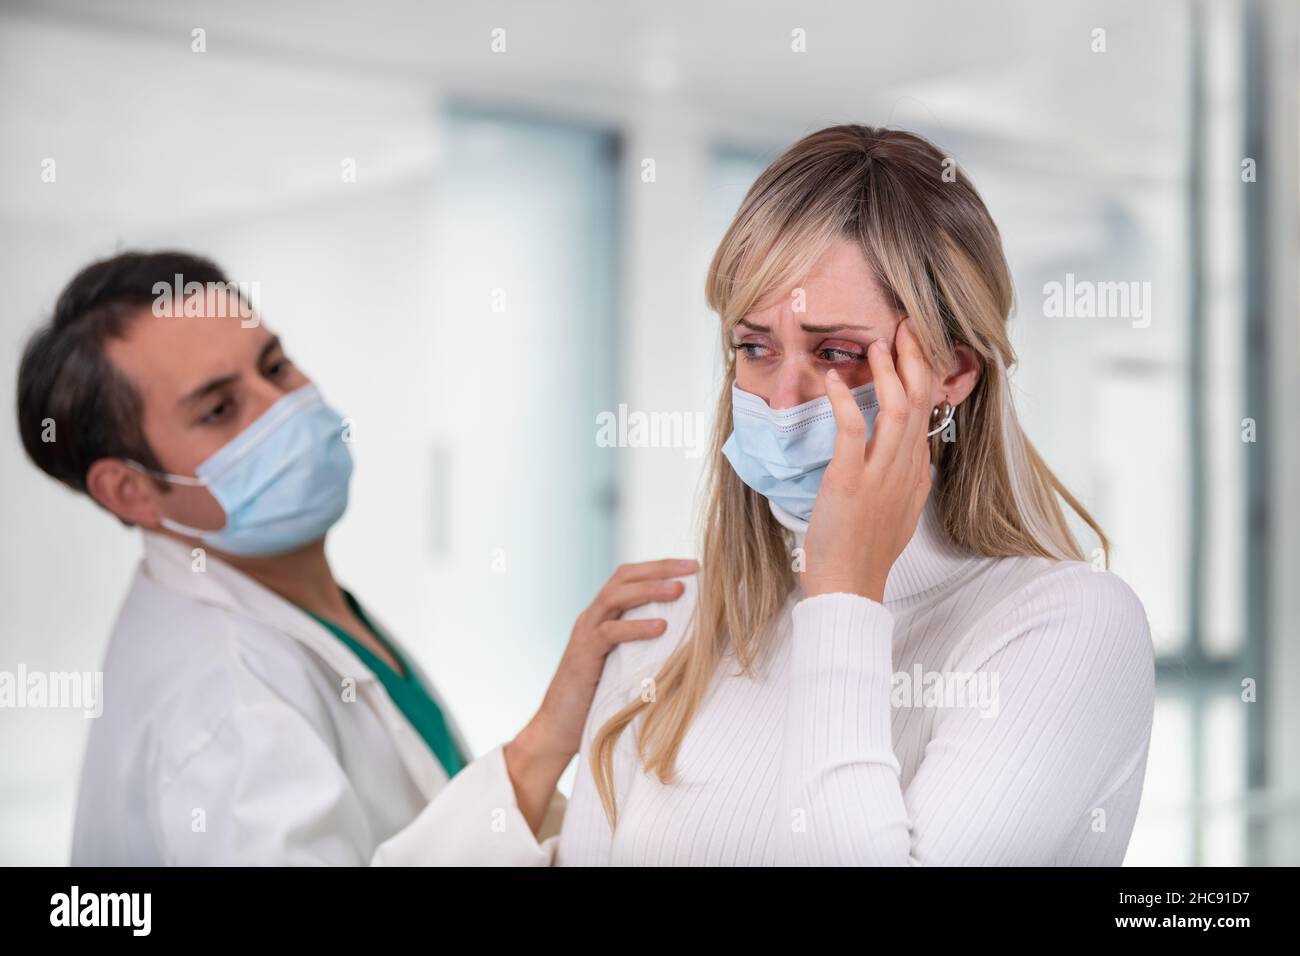 La femme pleurant étant réconfortée par un médecin Banque D'Images